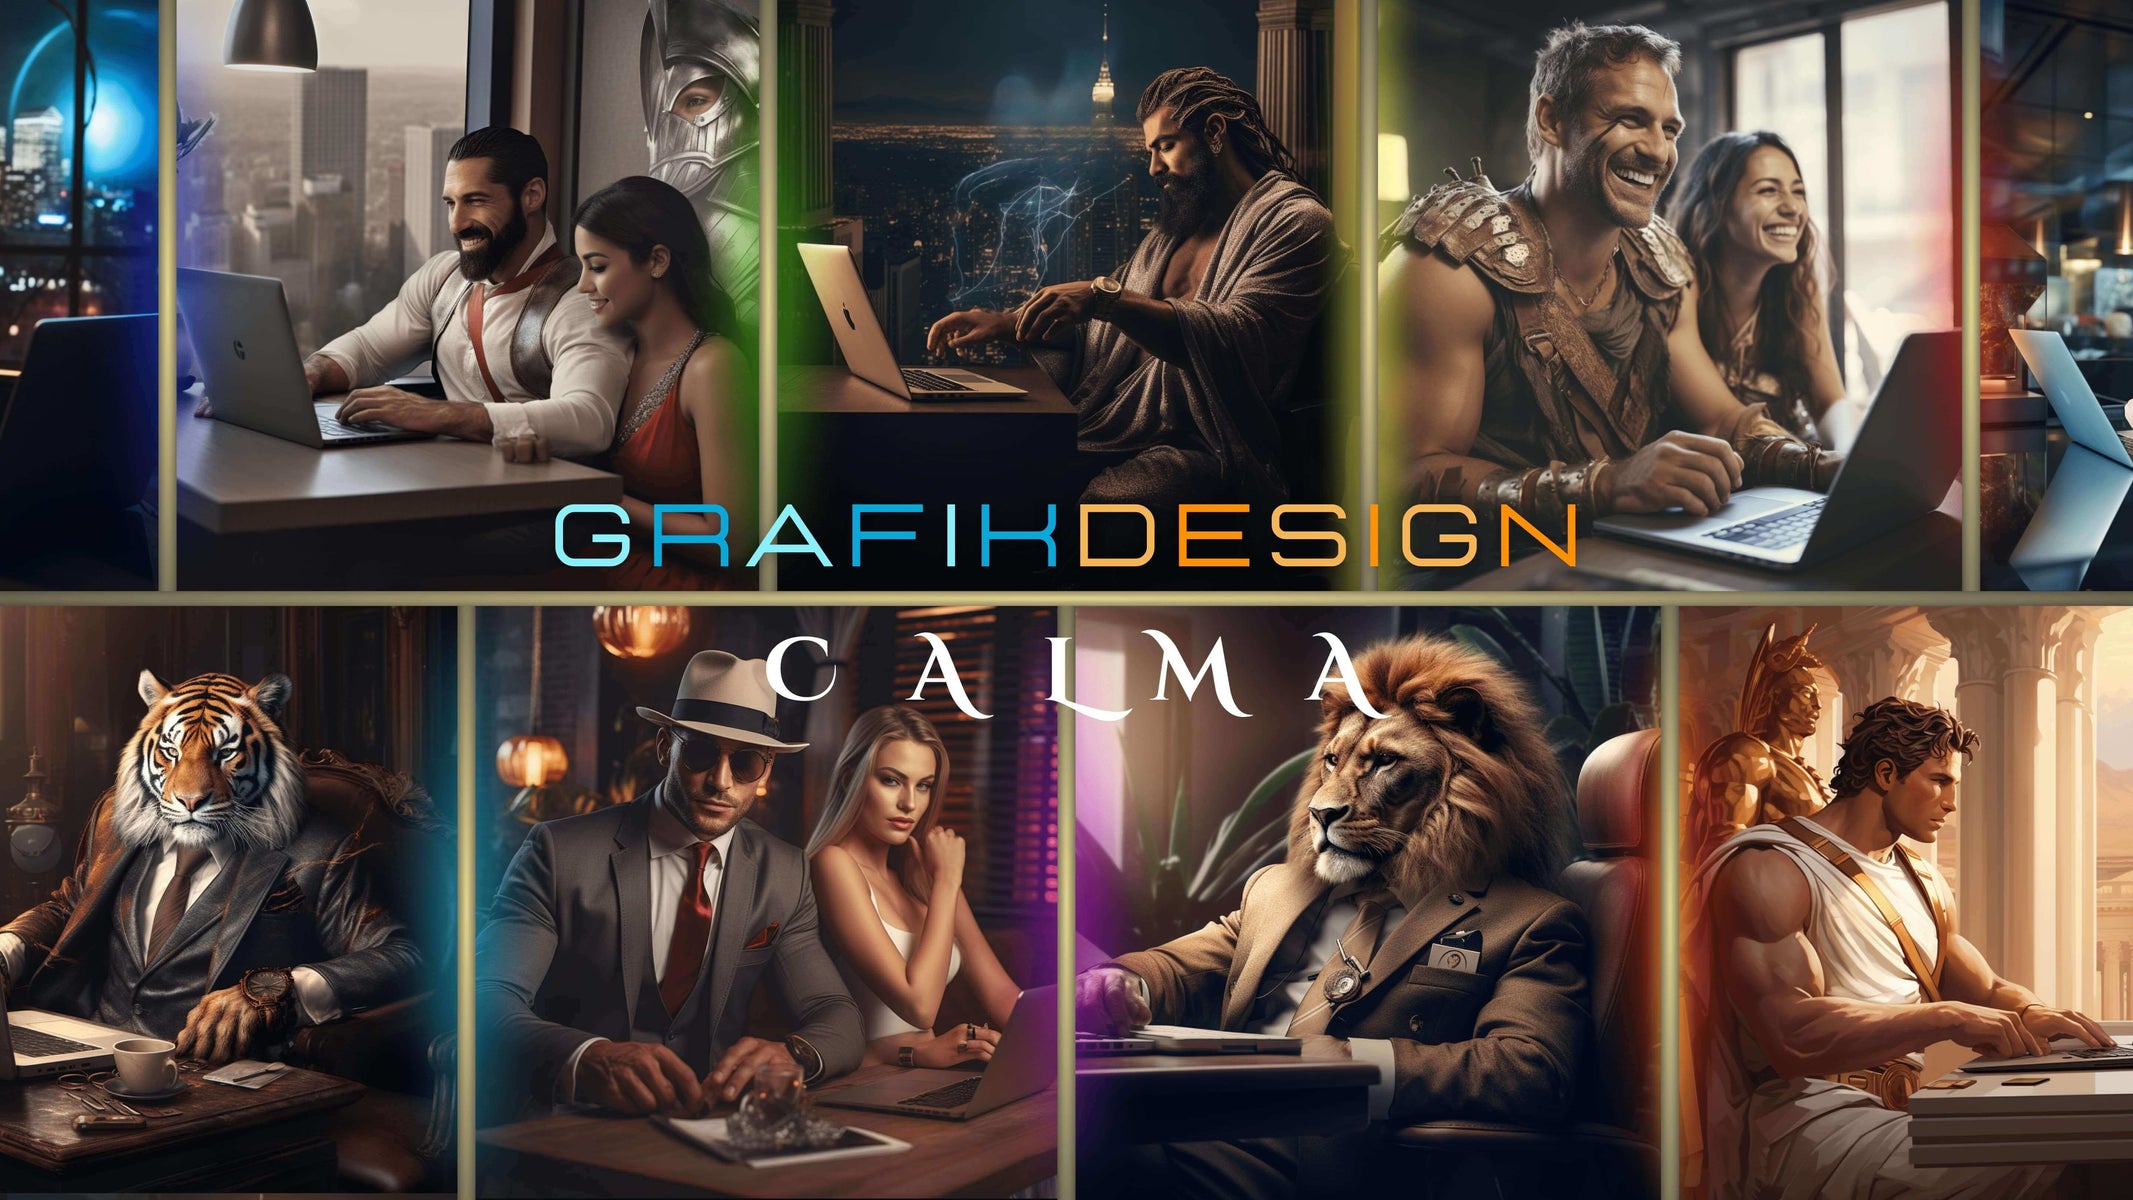 Grafikdesign Calma Blog Titelbild - Online Grafikdesign Dienstleistung Deutschland